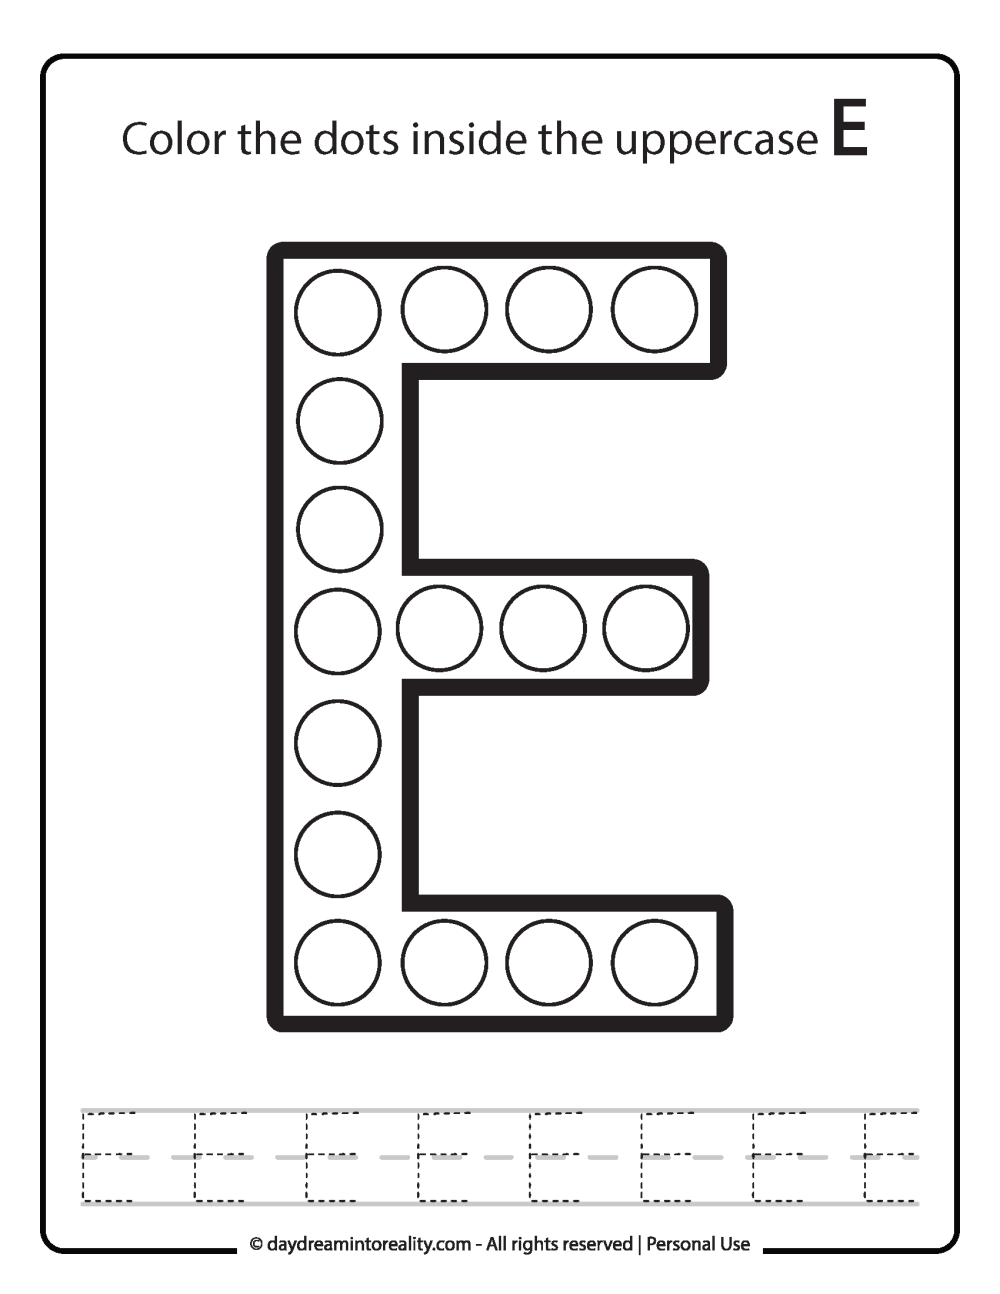 Uppercase "E" Dot Marker Worksheet Free Printable activity for kids (preschool, kindergarten)